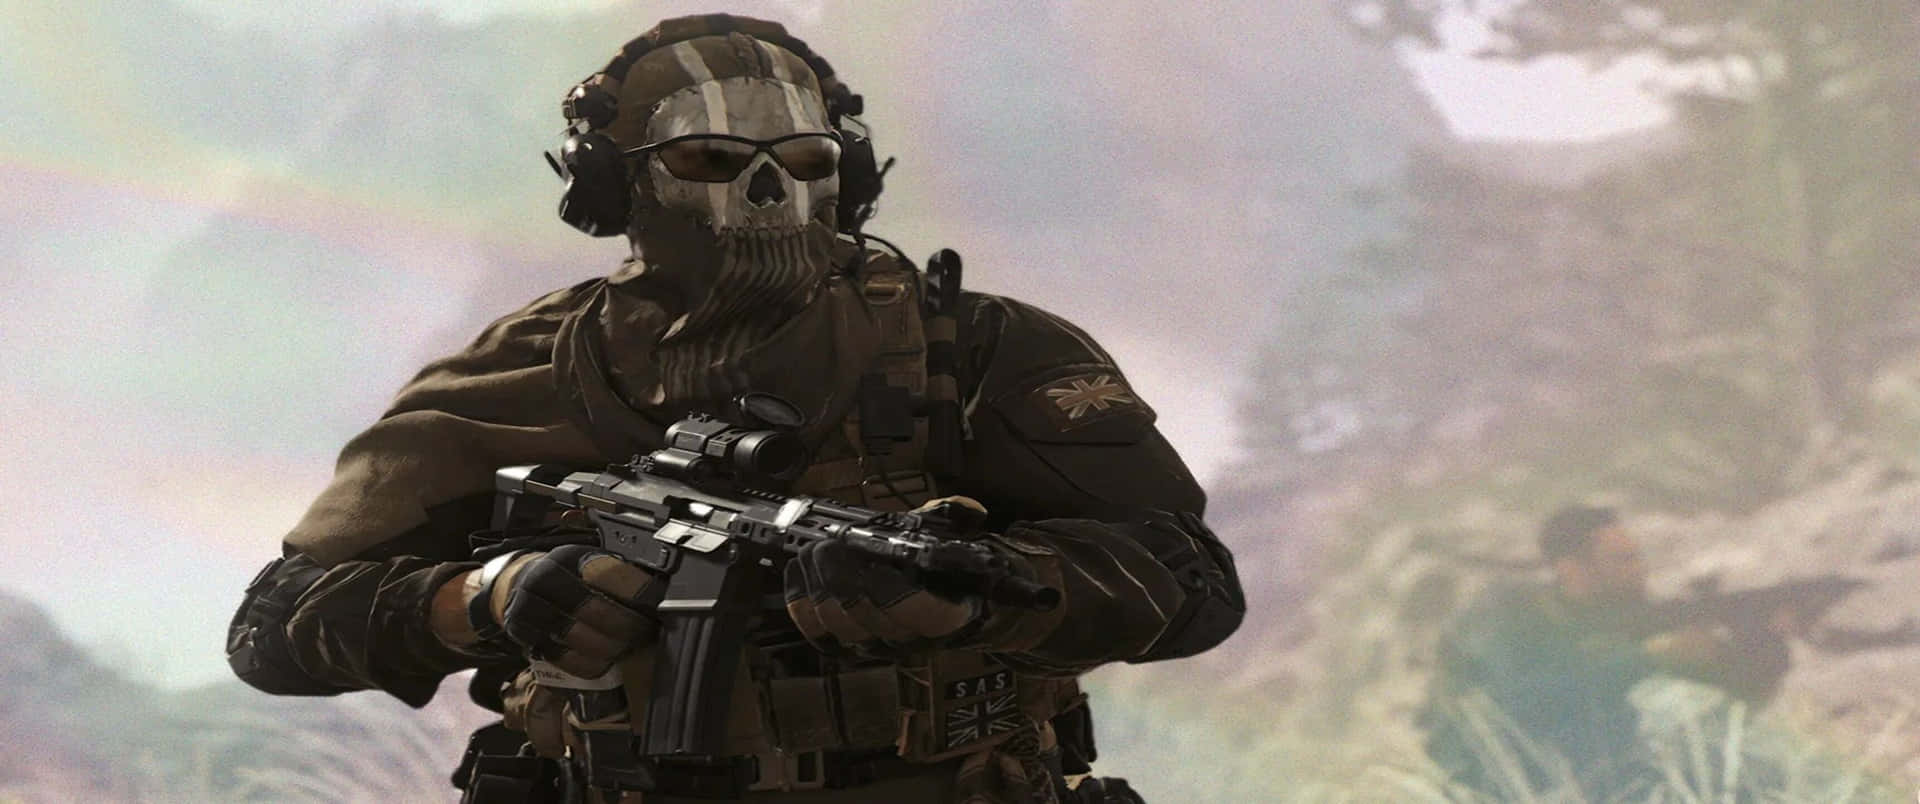 Fondode Pantalla De Call Of Duty Modern Warfare En Primer Plano De Ghost, Resolución 3440x1440p.